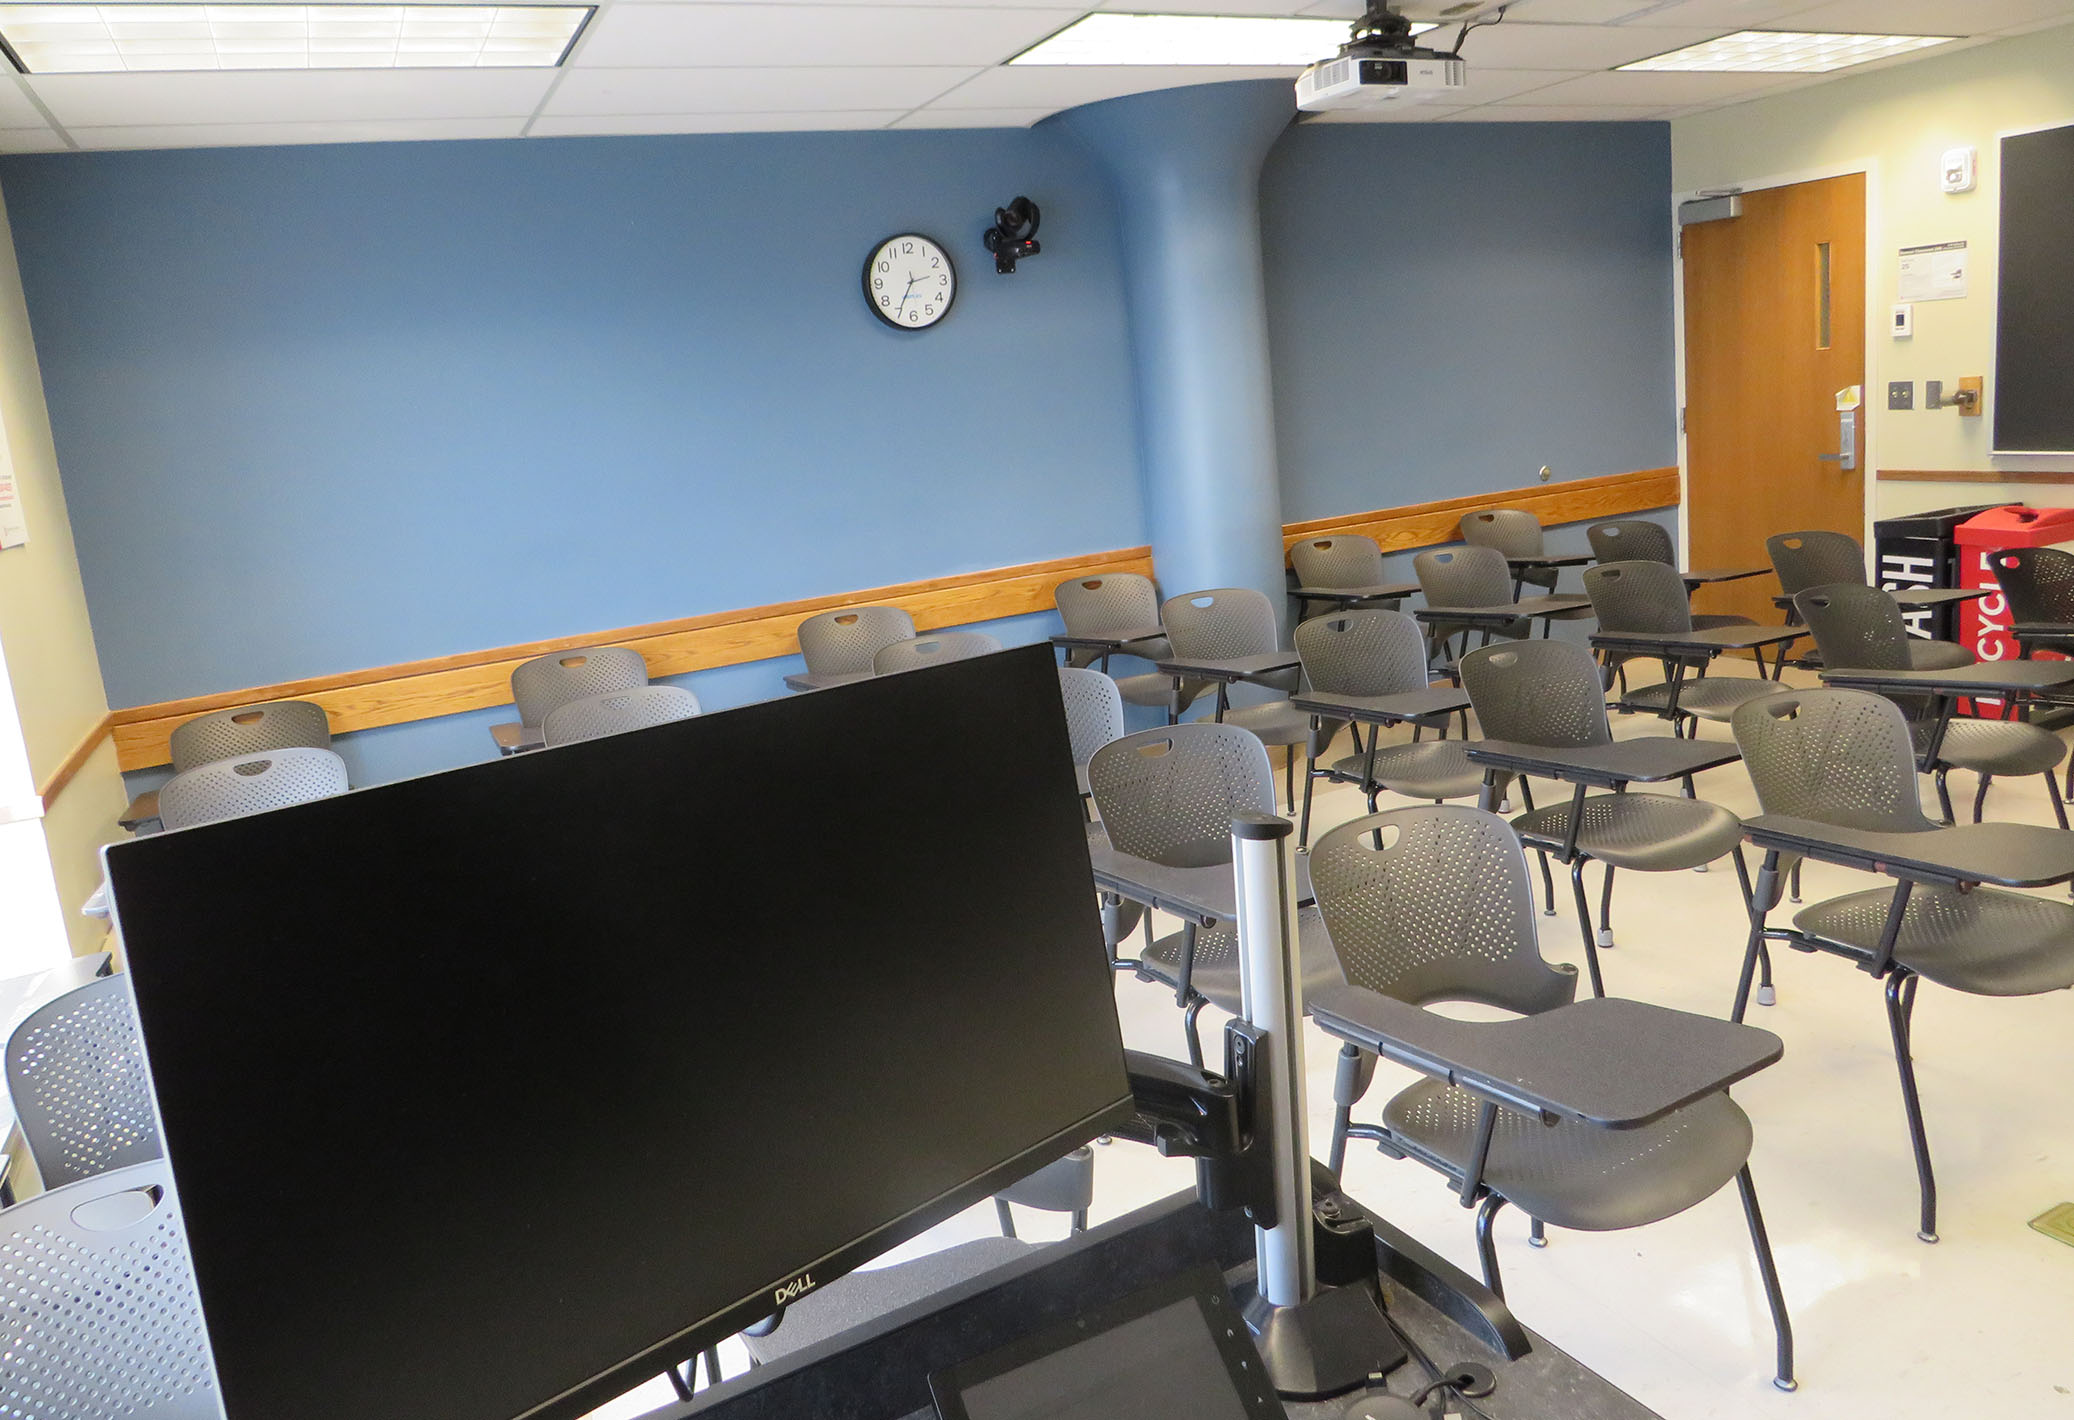 Enarson Classroom Building Room 240